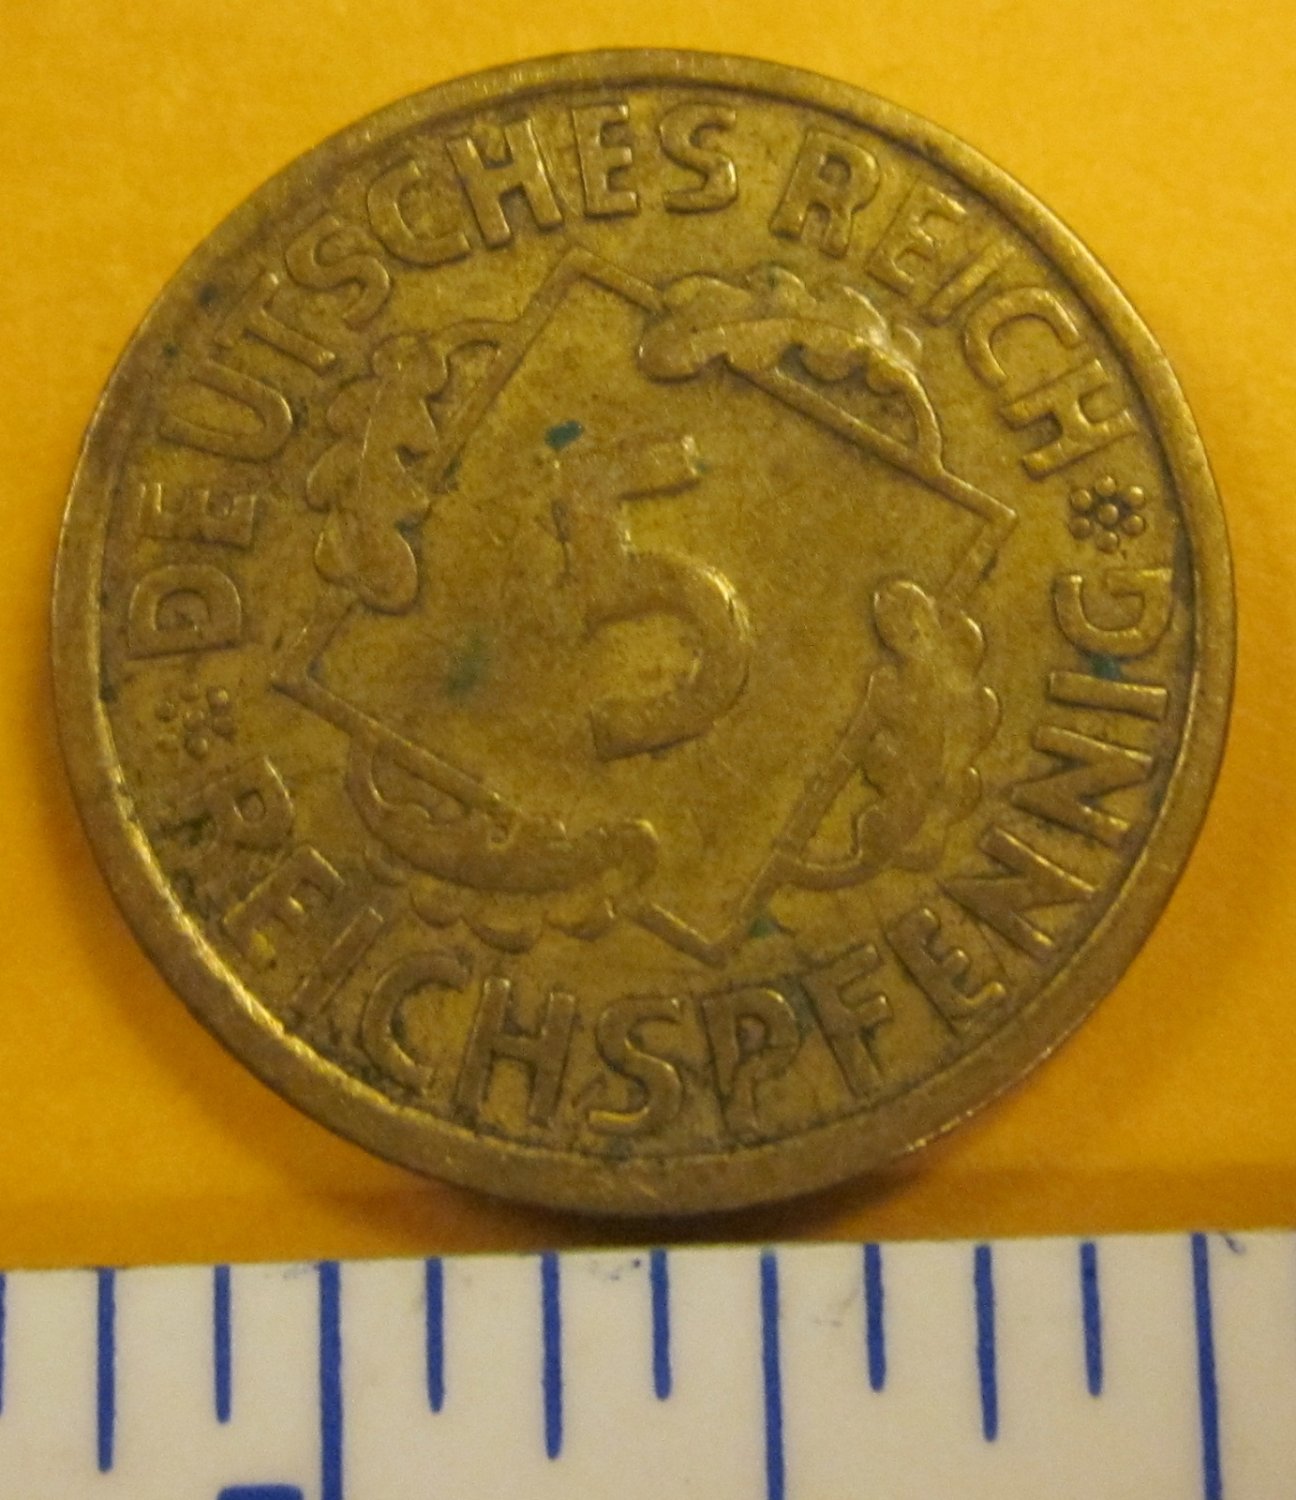 1936 5 pfennig DEUTSCHES REICH GERMANY WELMAR REPUBLIC